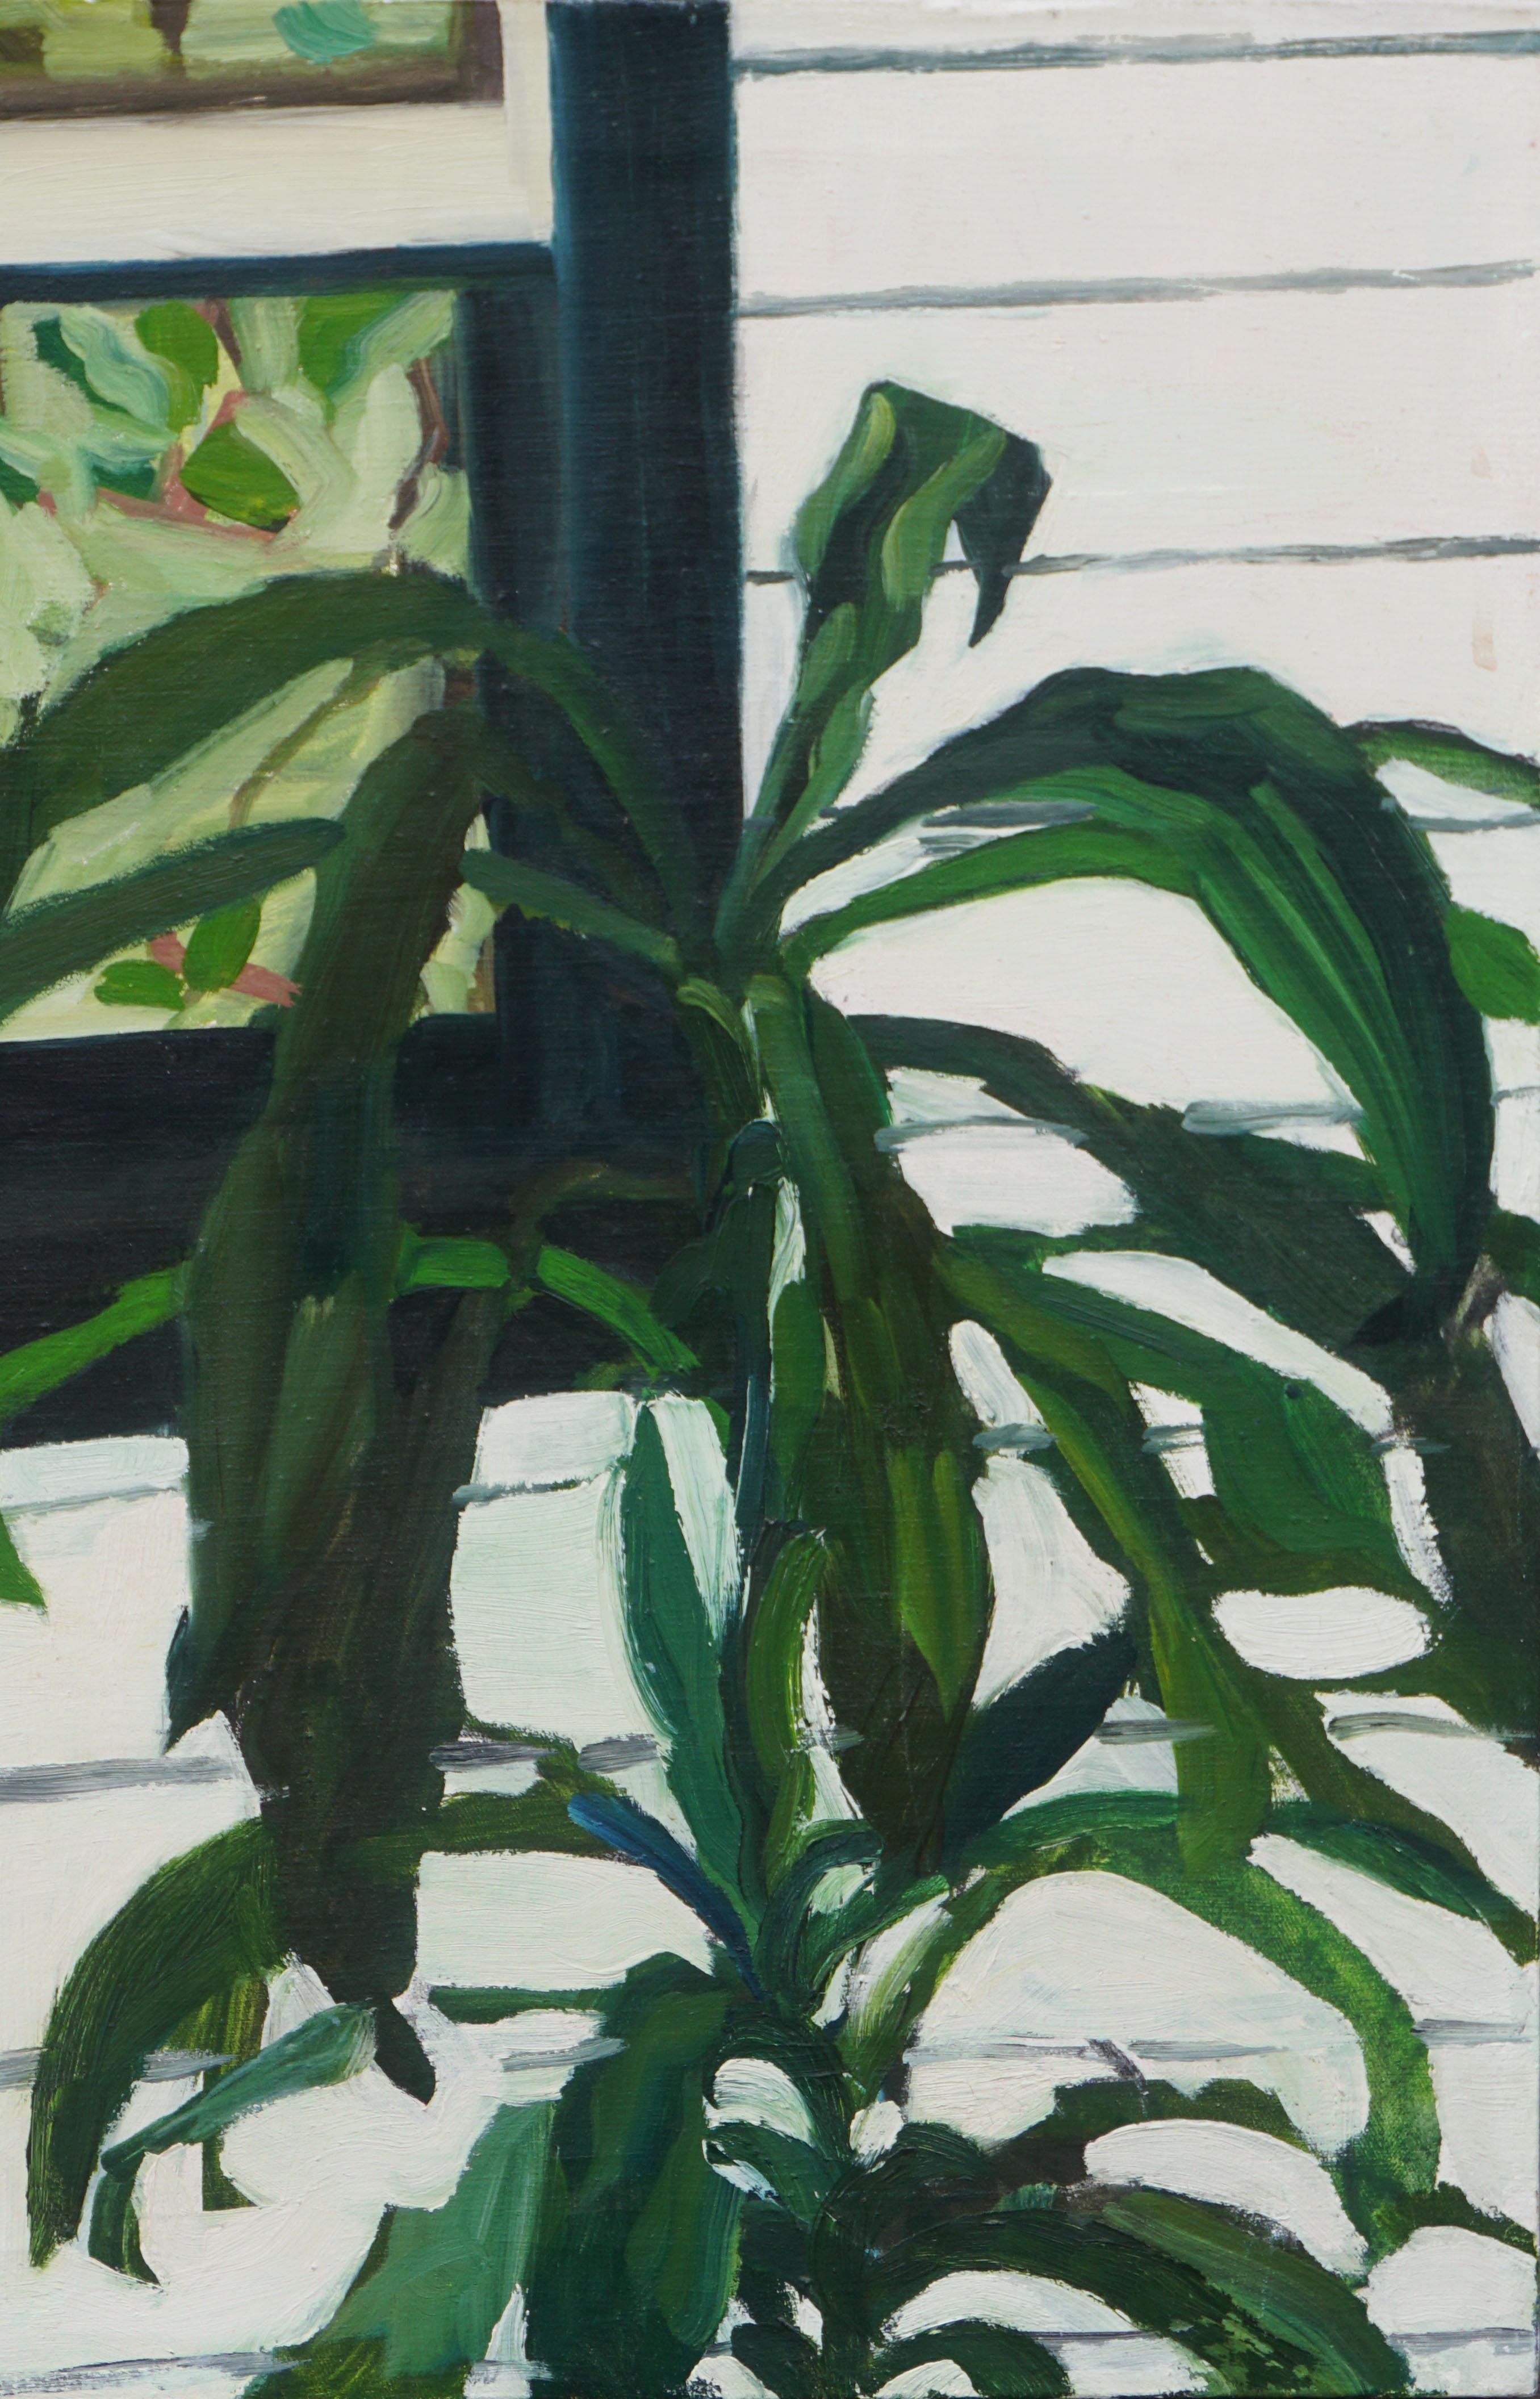 Dracaena, Plante de jardin botanique - Nature morte - Expressionniste Painting par Michael Pauker 